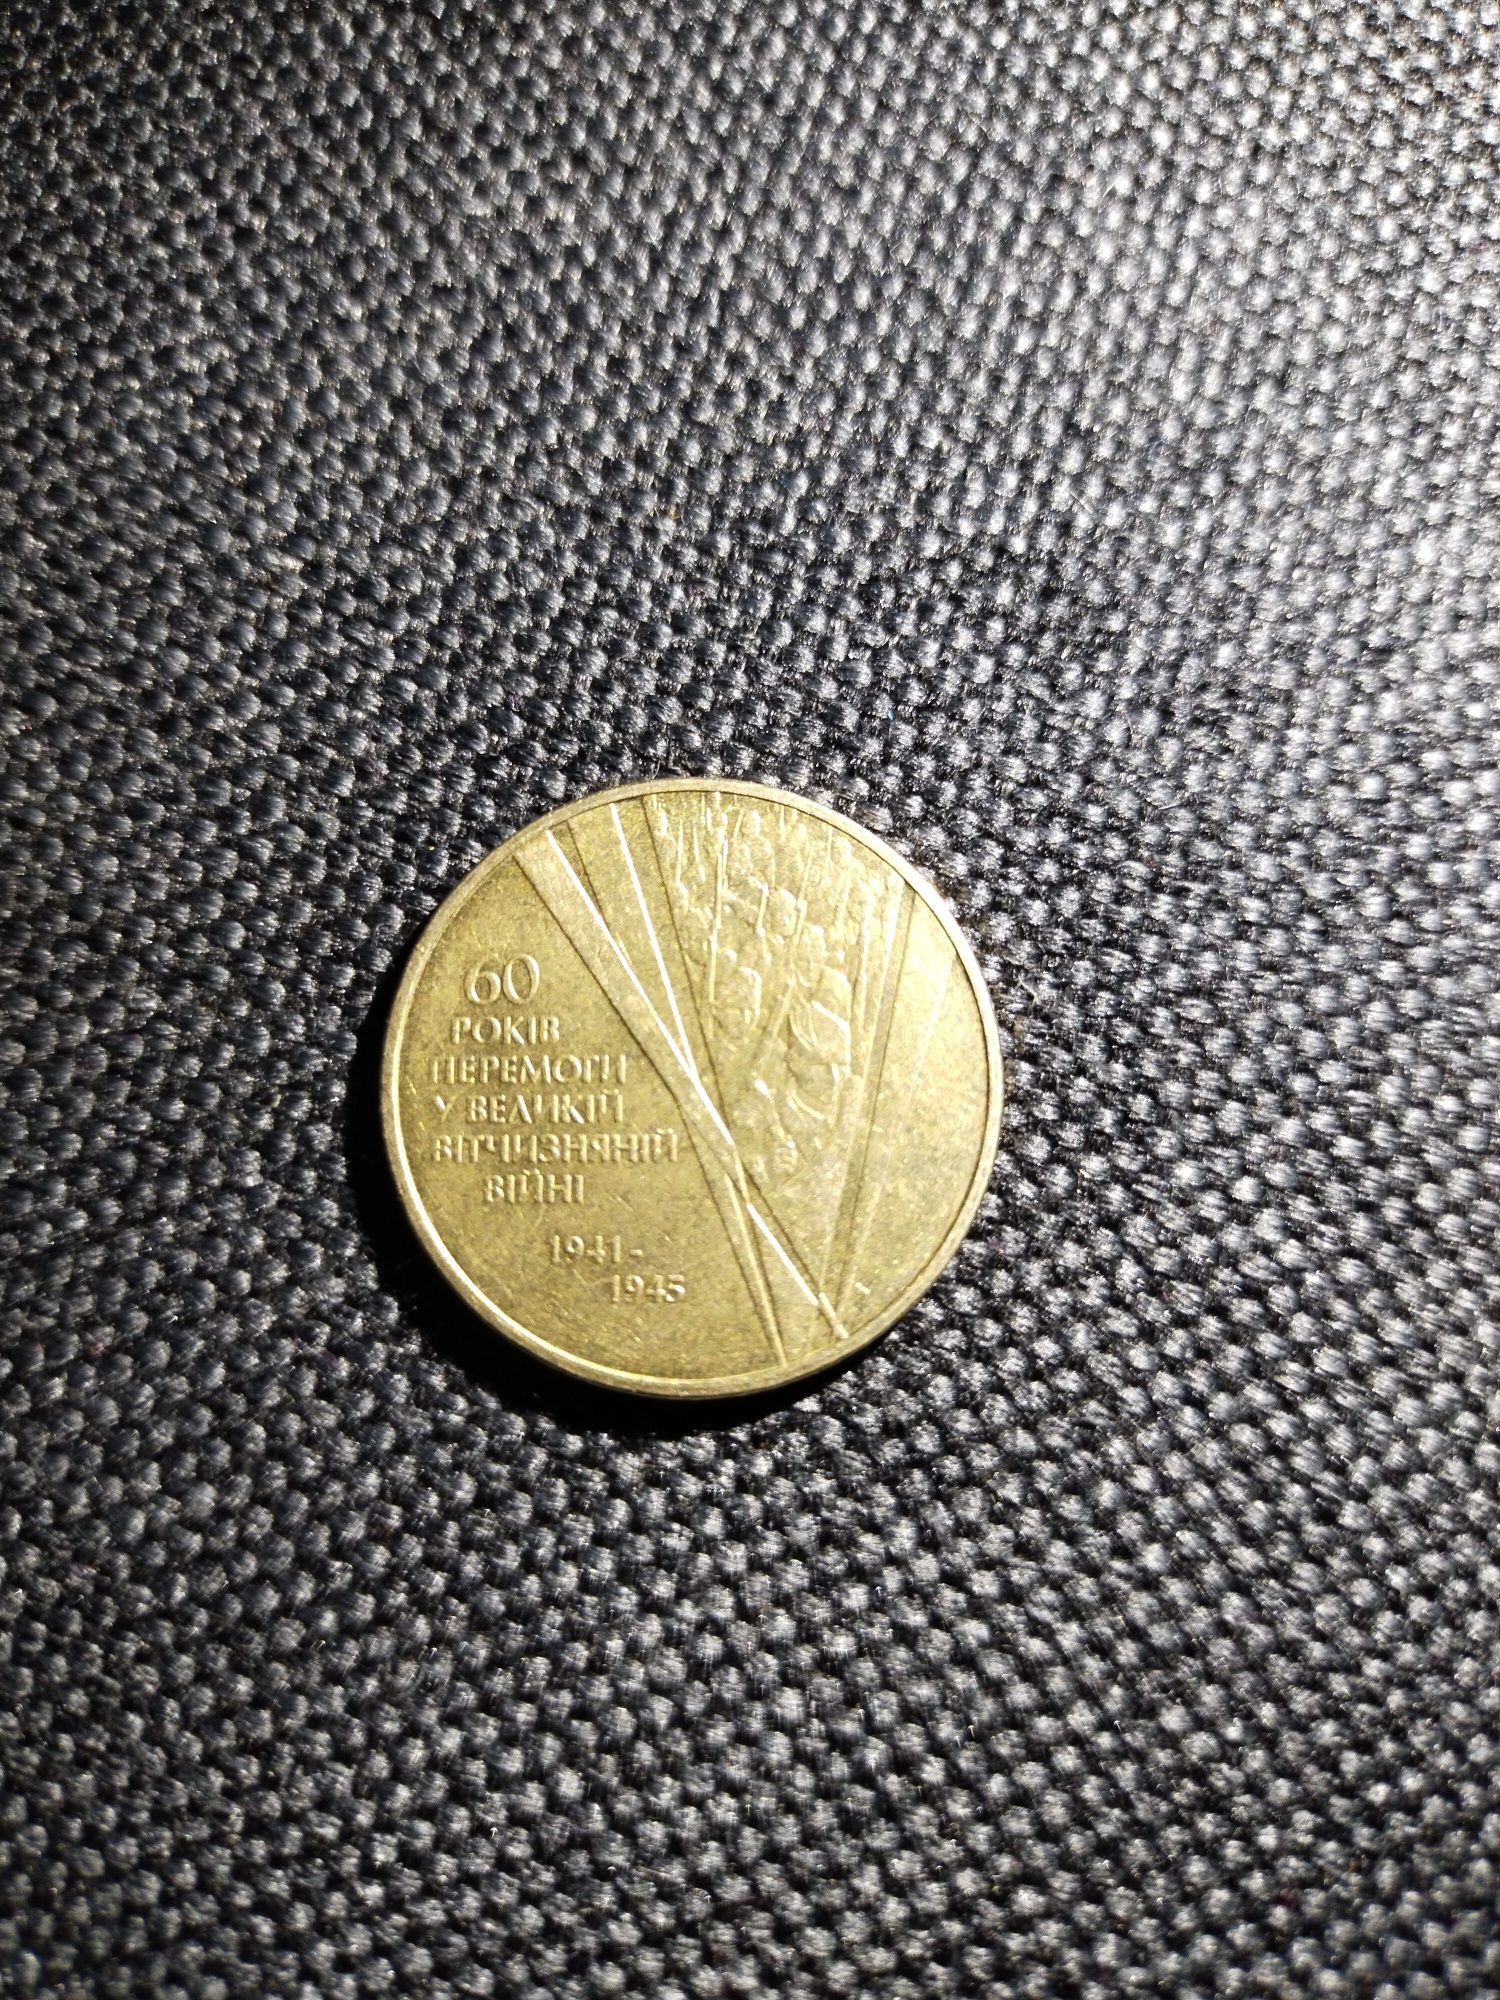 Монета 1 гривня от 5 монет 60років перемоги